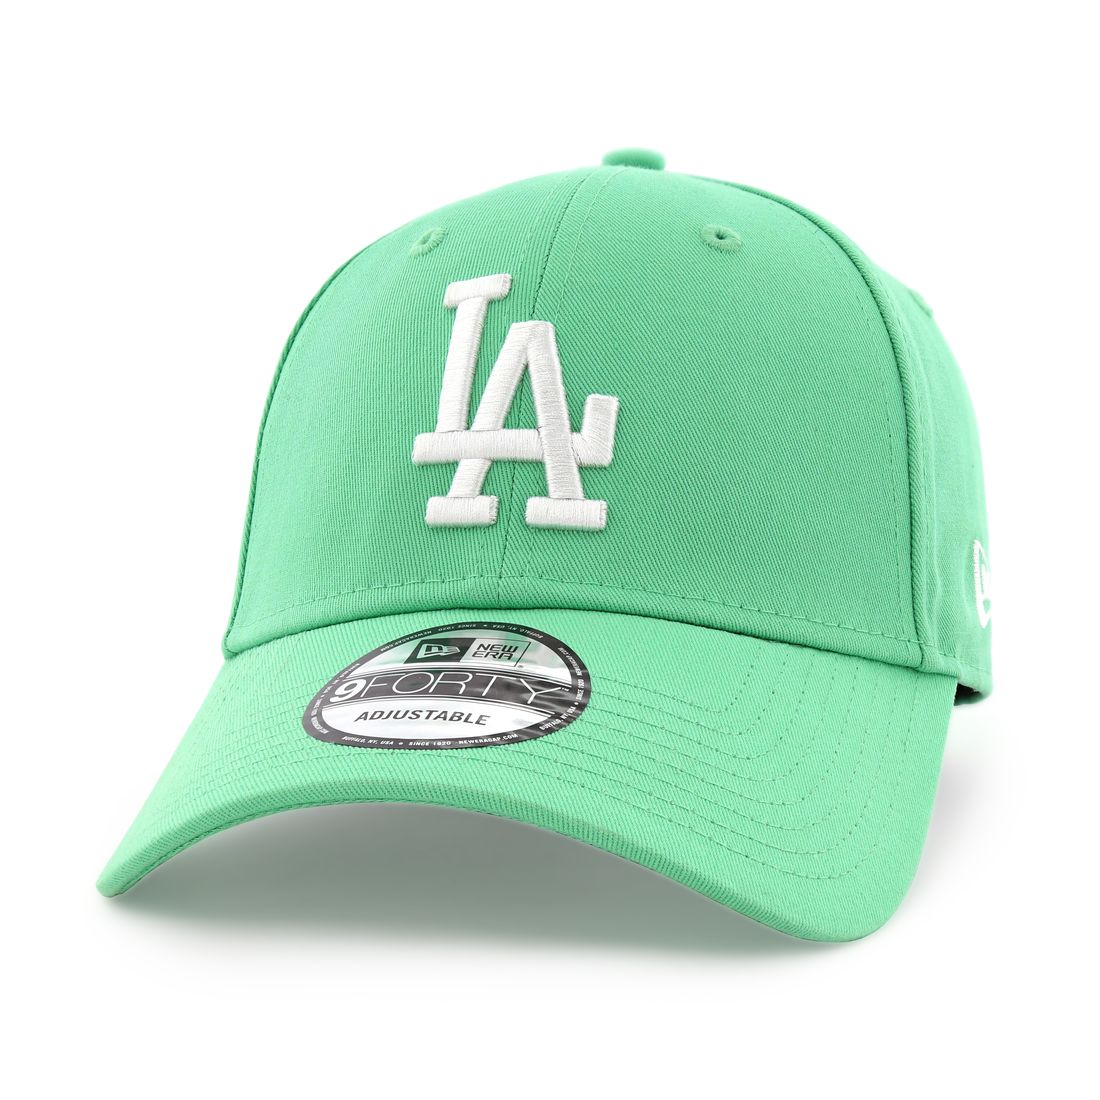 قبعة للرجال تحمل علامة فريق لوس أنجلوس دودجرز ليغ اسينشيال من نيو إيرا لون أخضر